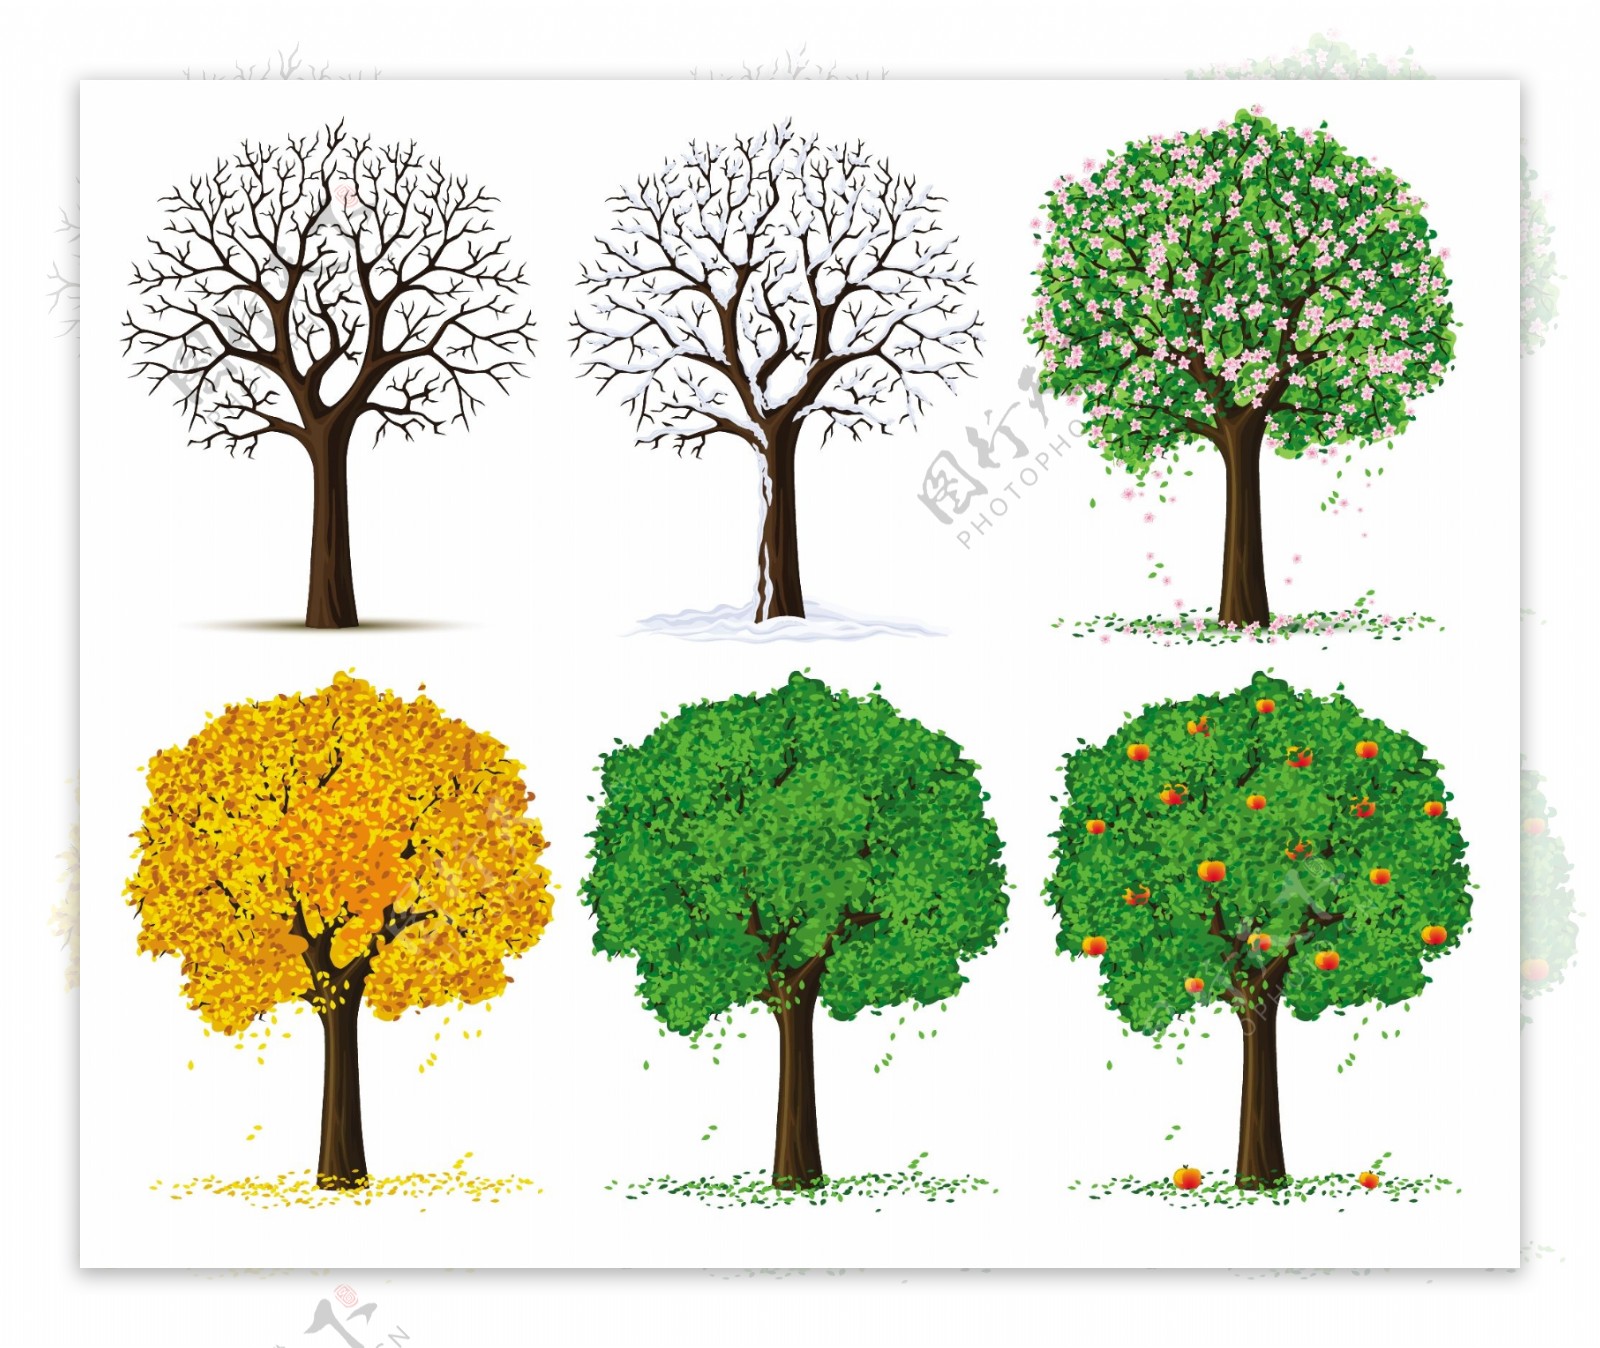 四季的树木矢量素材